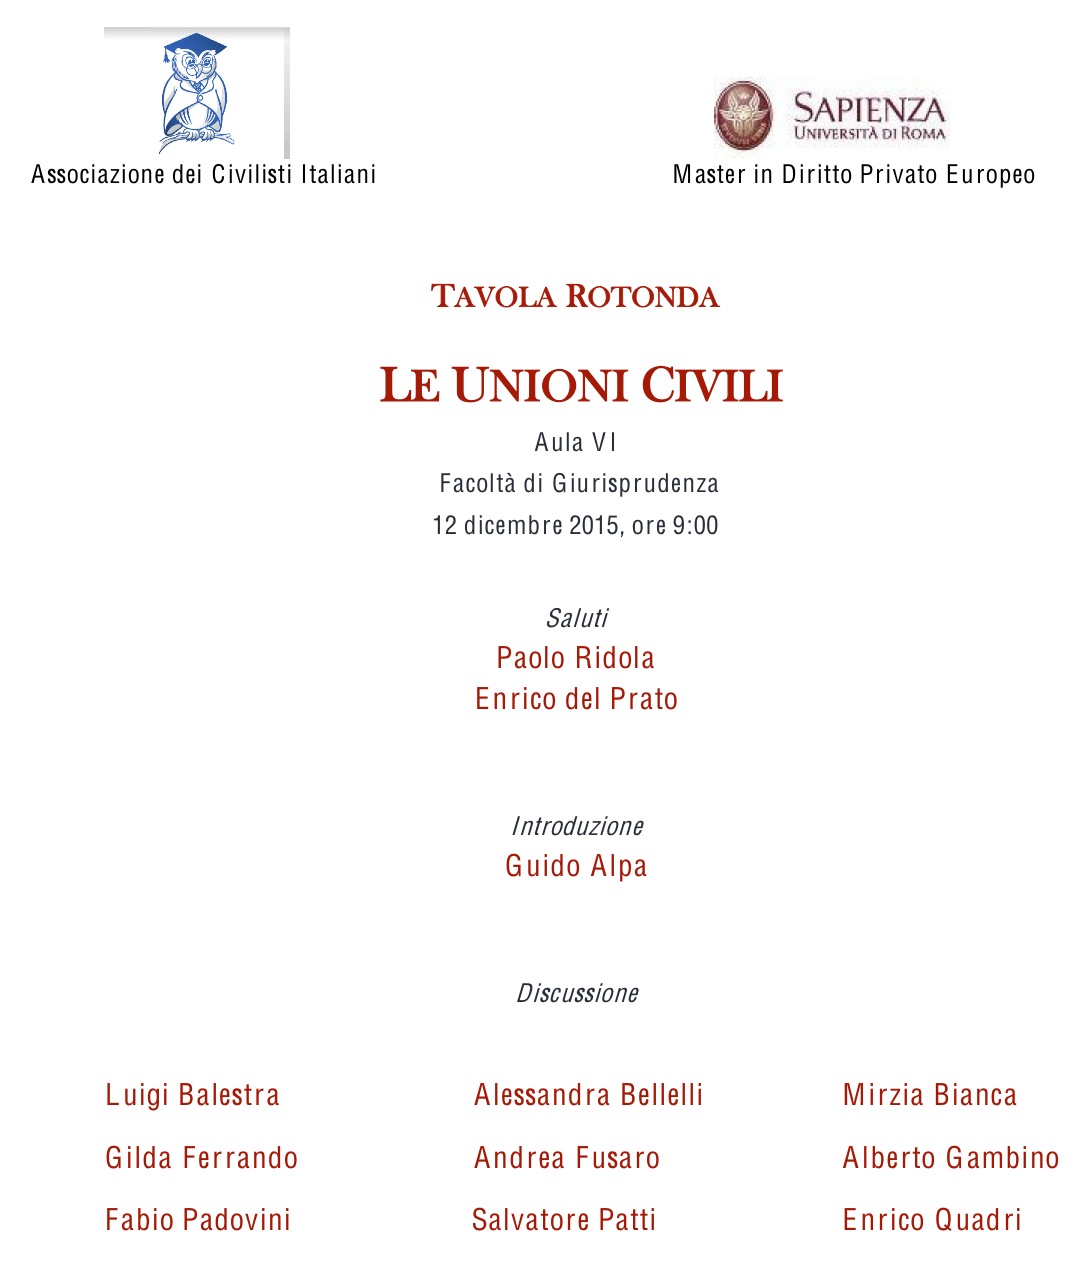 Le unioni civili - Roma, 12 dicembre 2015